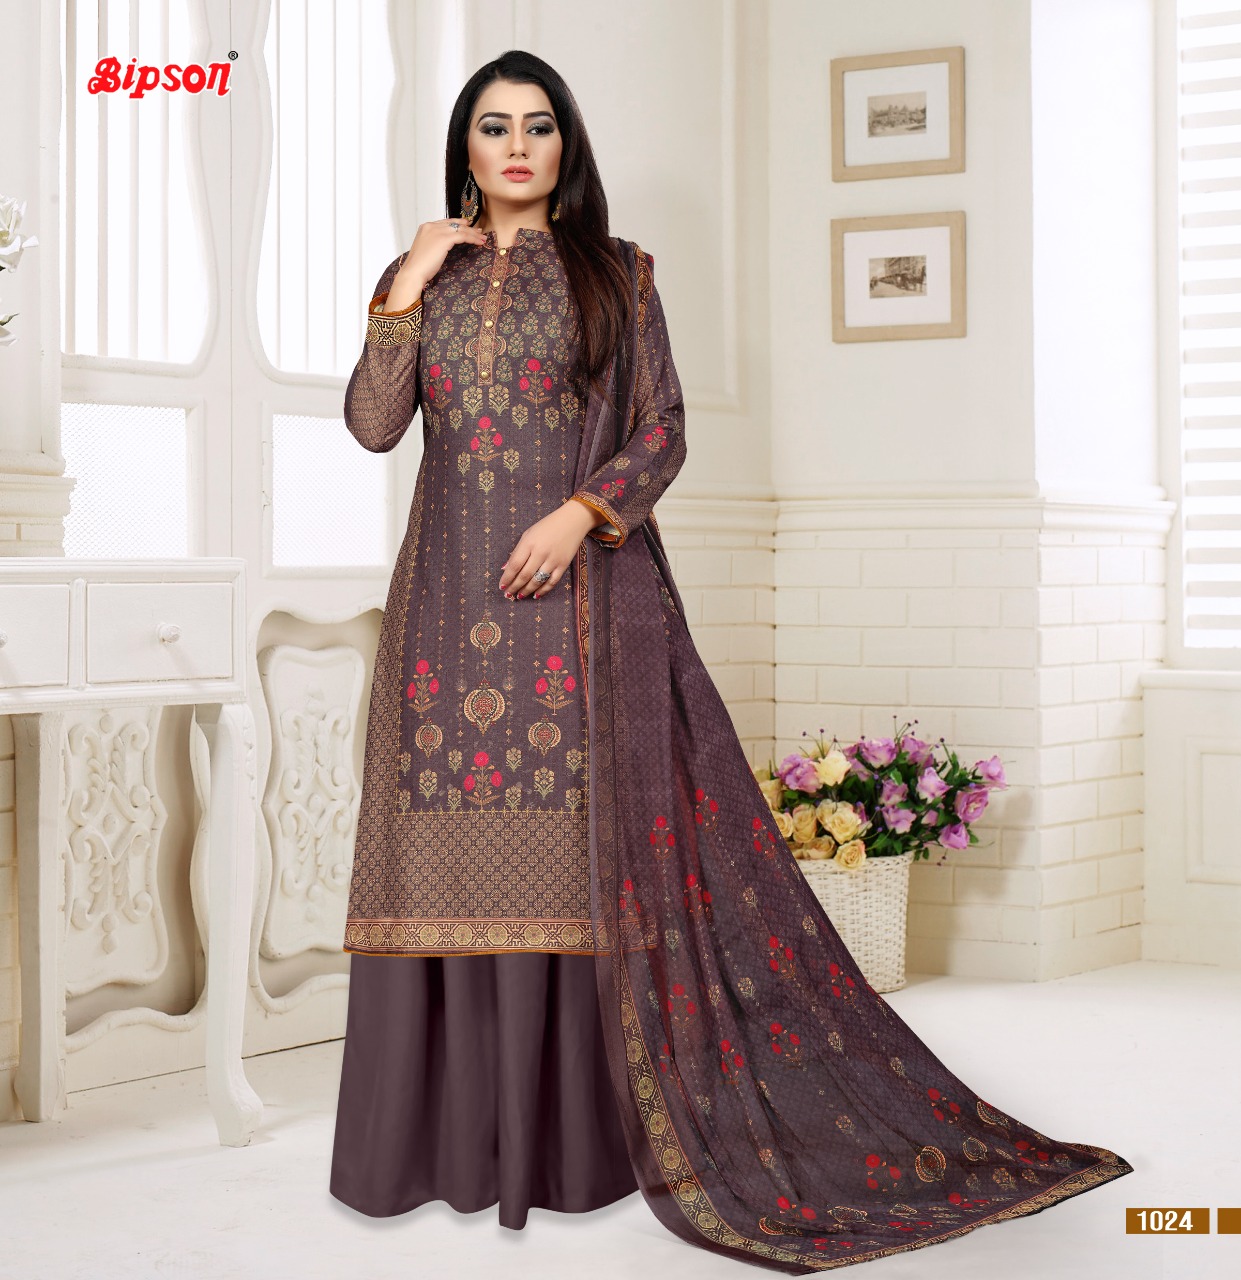 Bipson raksha astonishing style beautifully designed Salwar suits